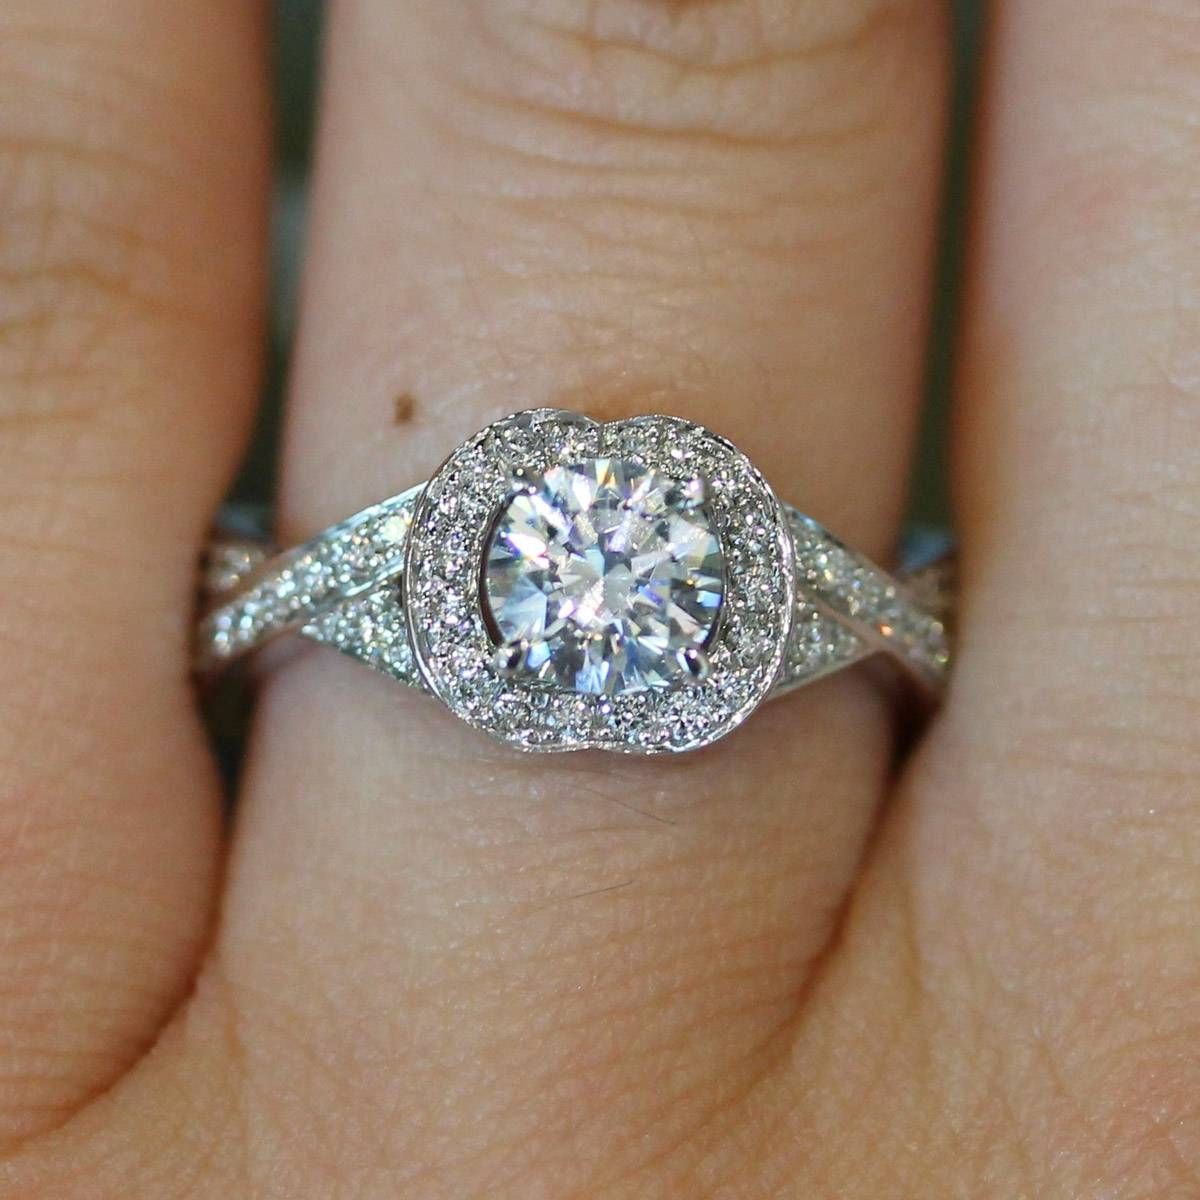 Ring San Francisco Wedding Rings Wedding Ring With Diamonds All With San Francisco Diamond Engagement Rings (View 7 of 15)